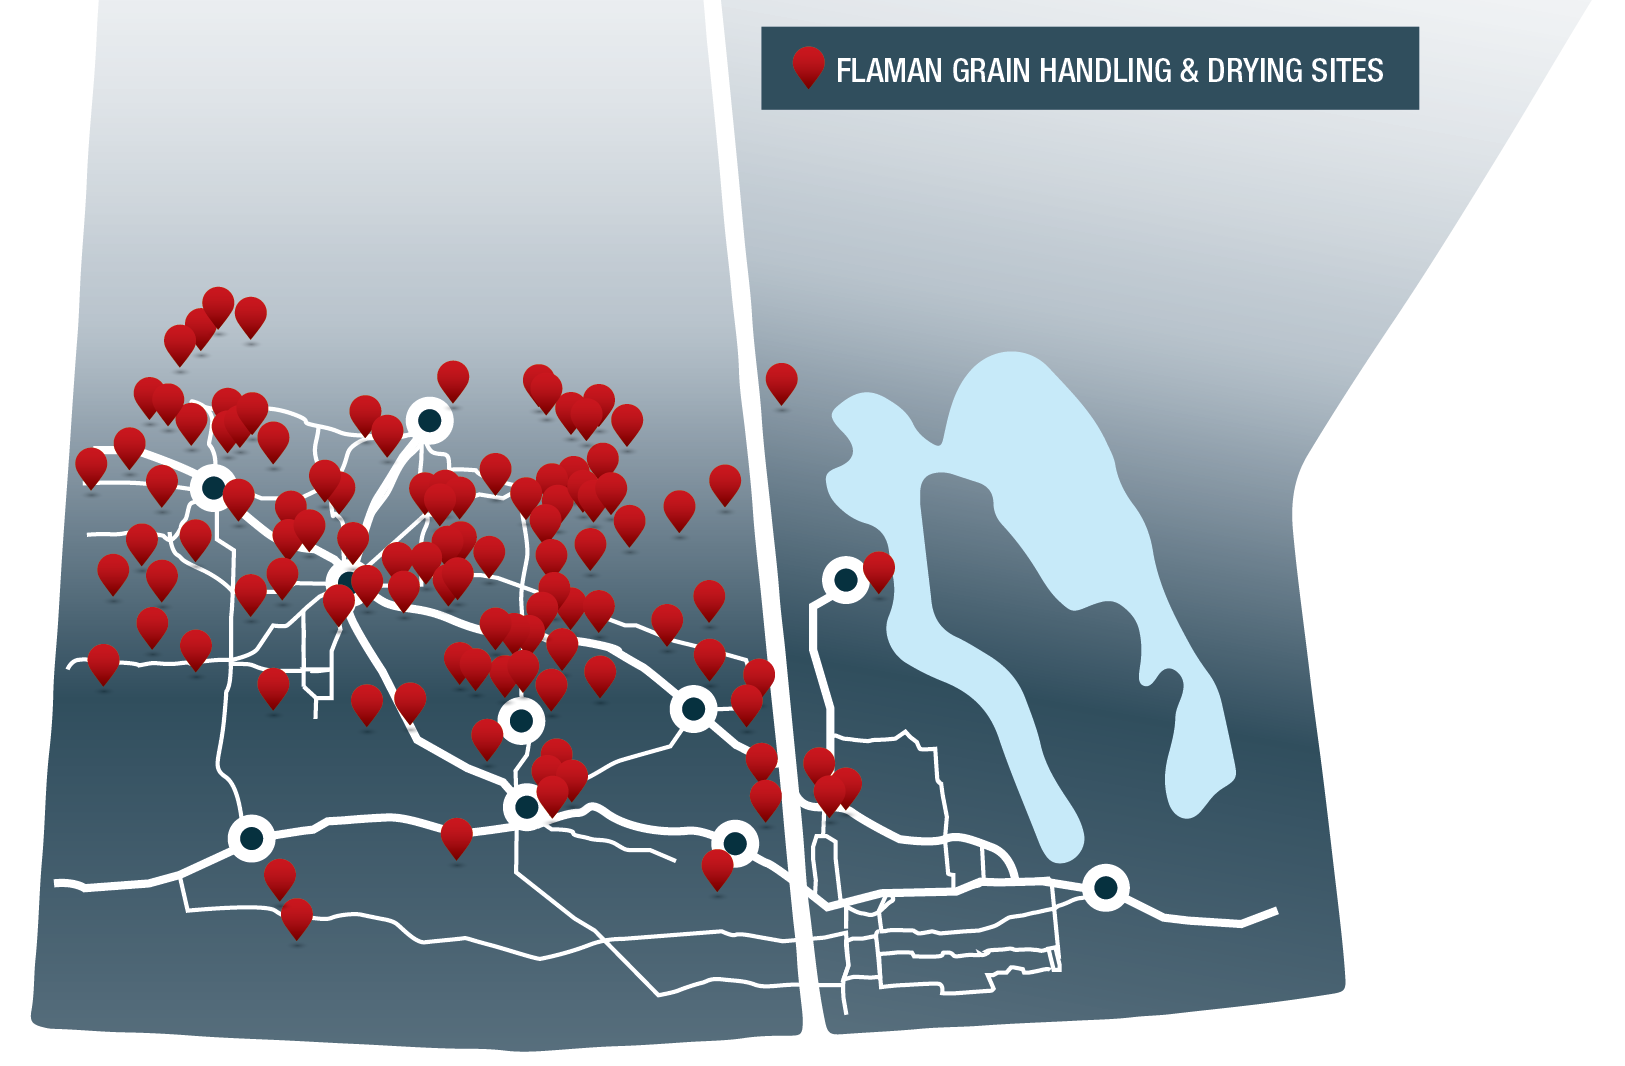 Map of Flaman Grain Handling sites